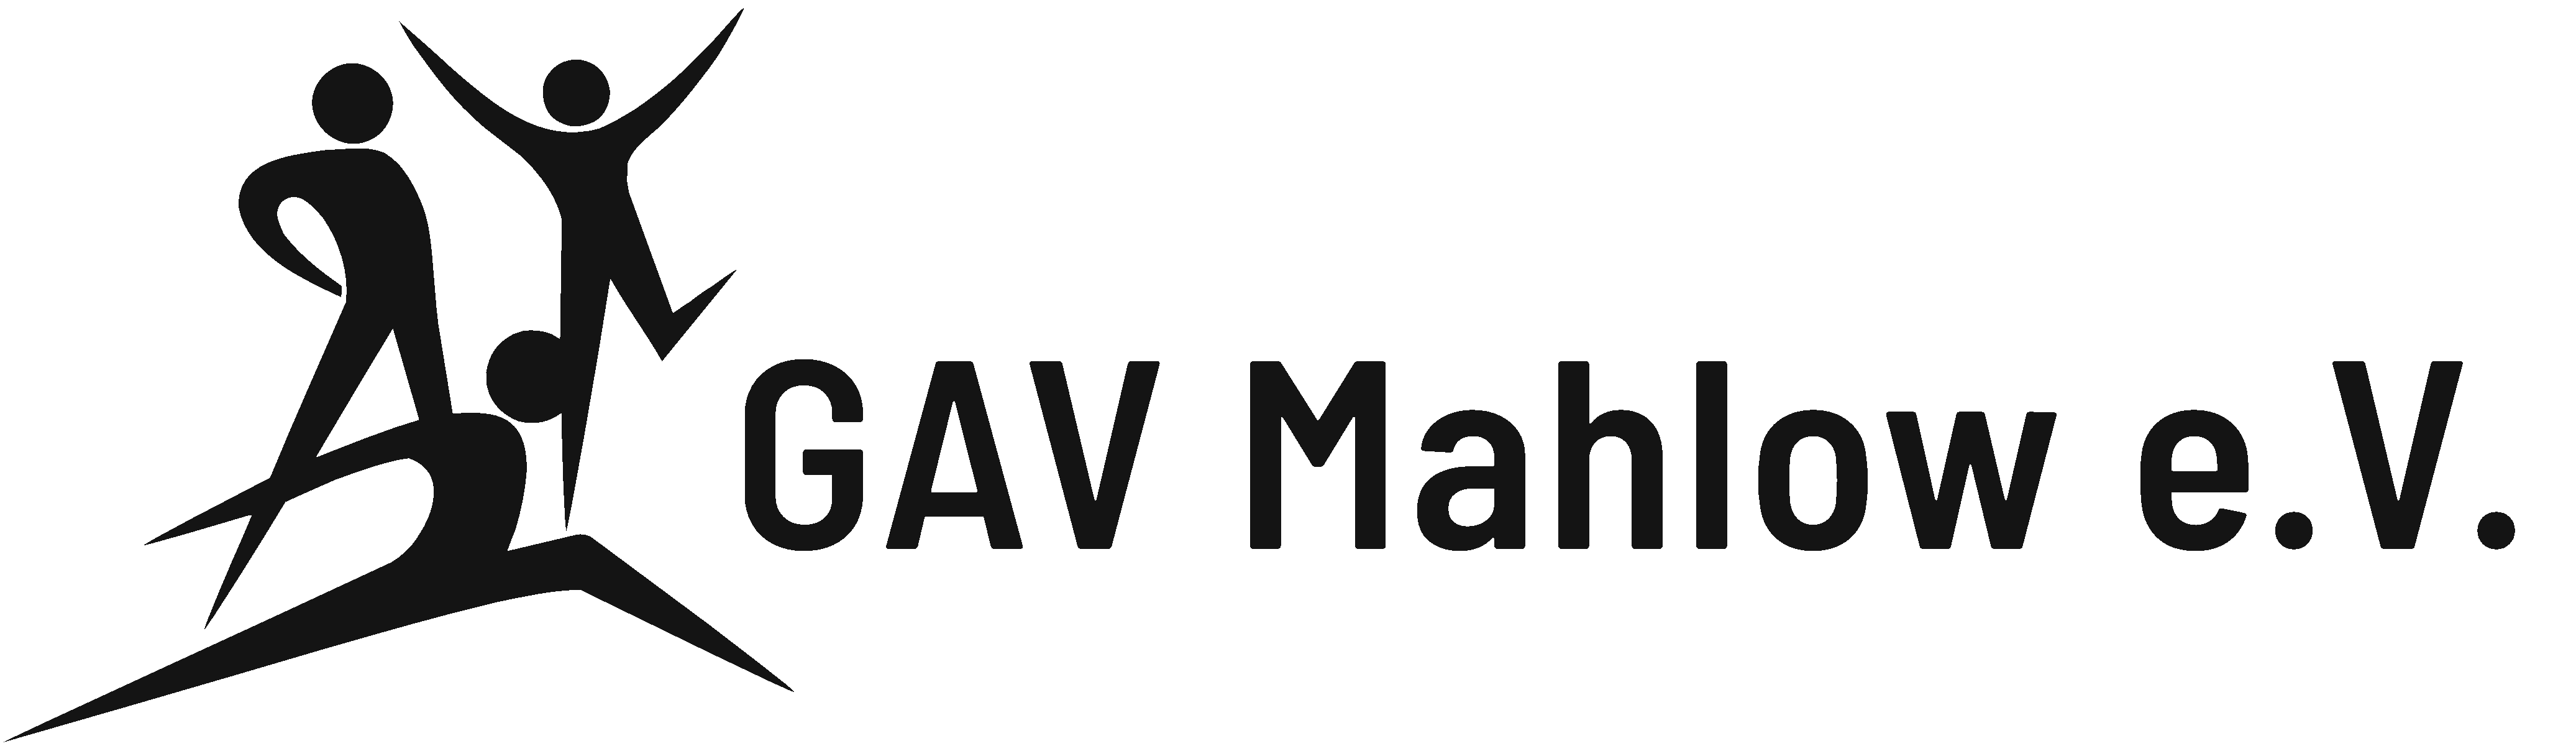 GAV Mahlow e.V.